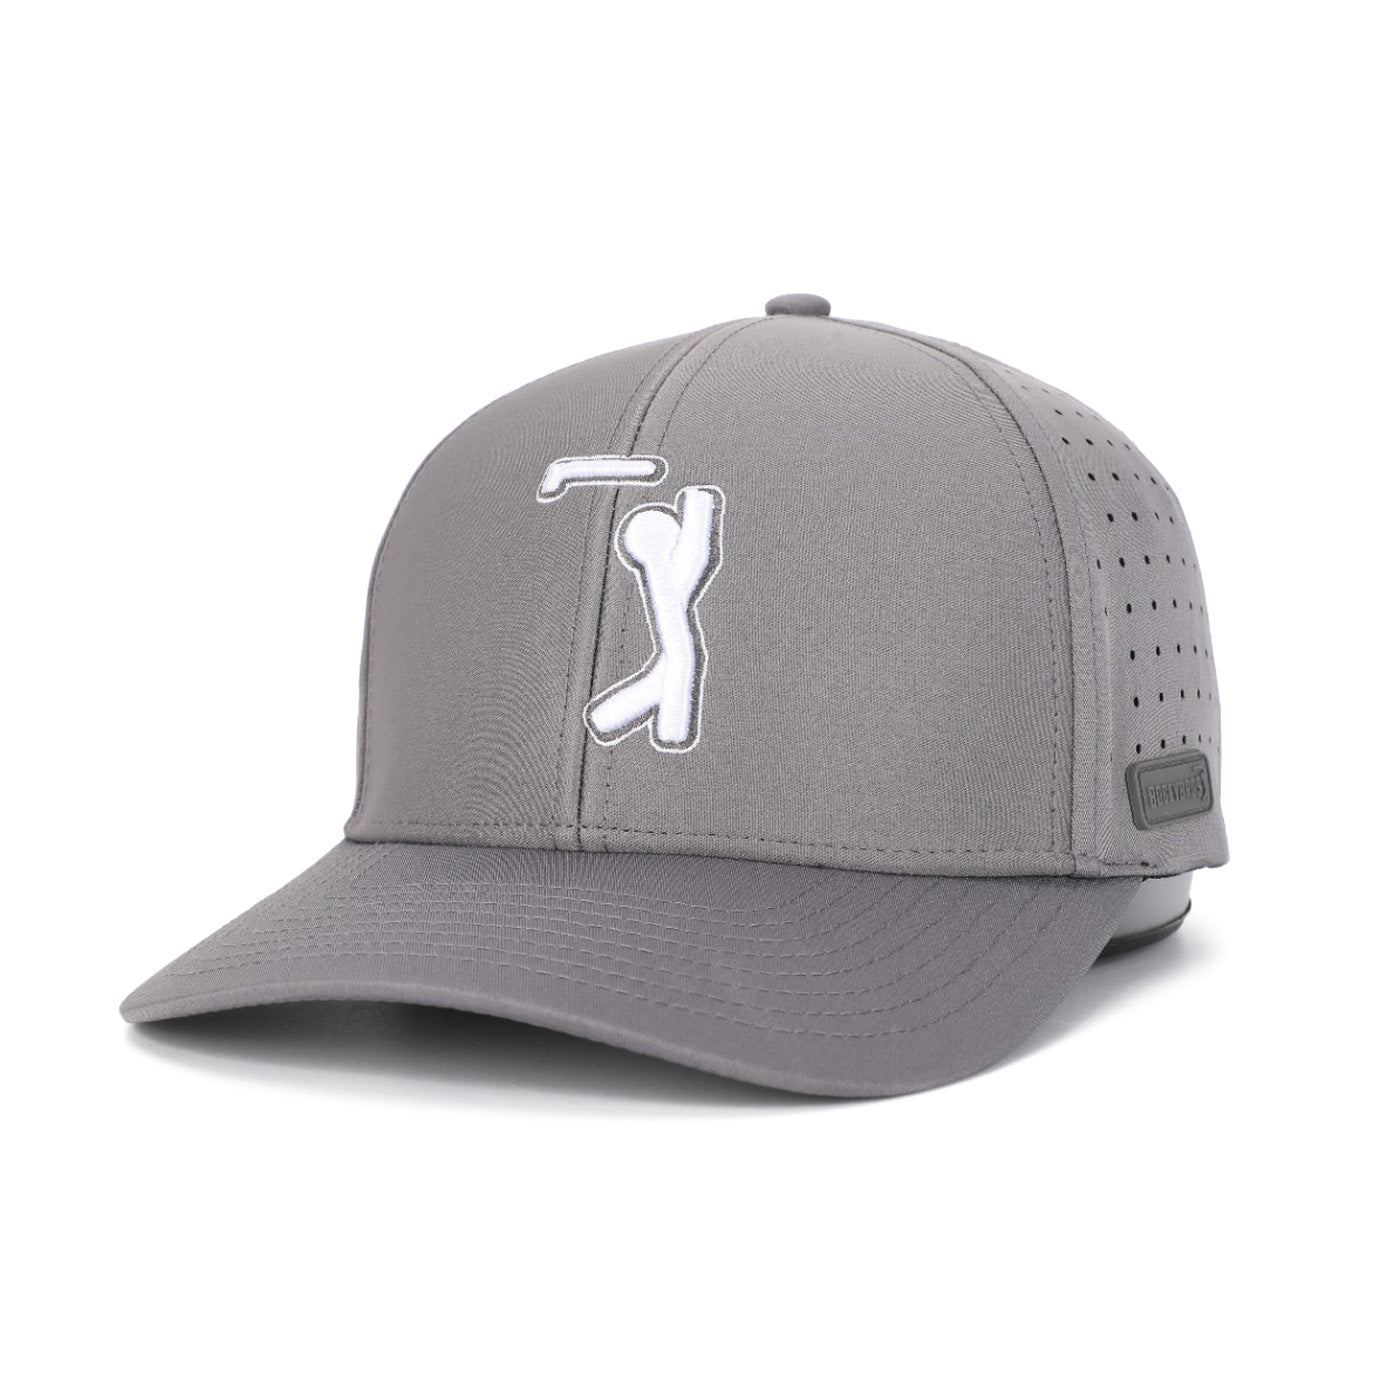 Bogeyman Dark Grey - Performance Golf Hat - Fitted